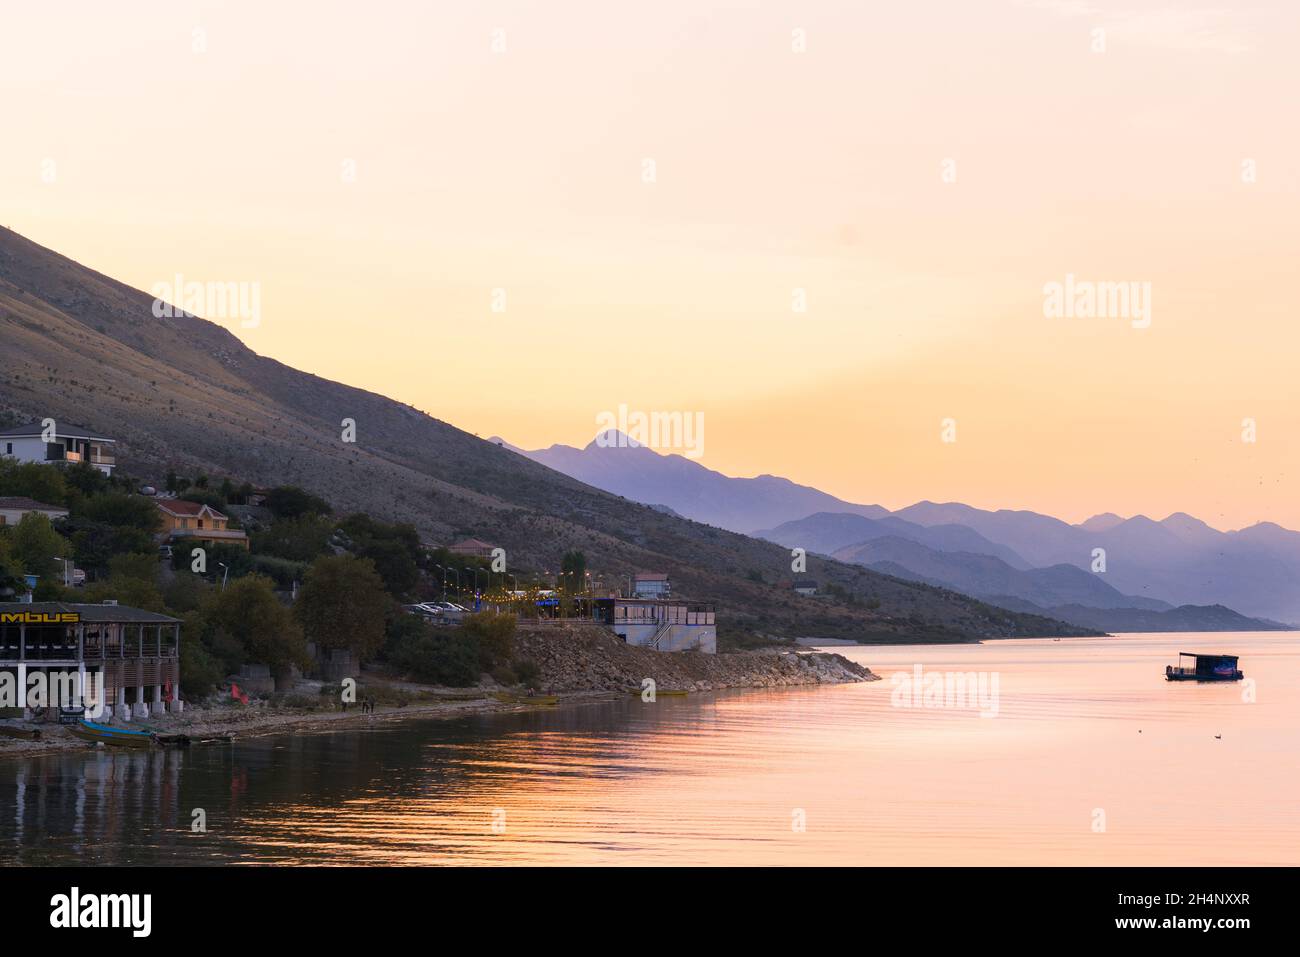 View of Shkodra Lake, Albania Stock Photo